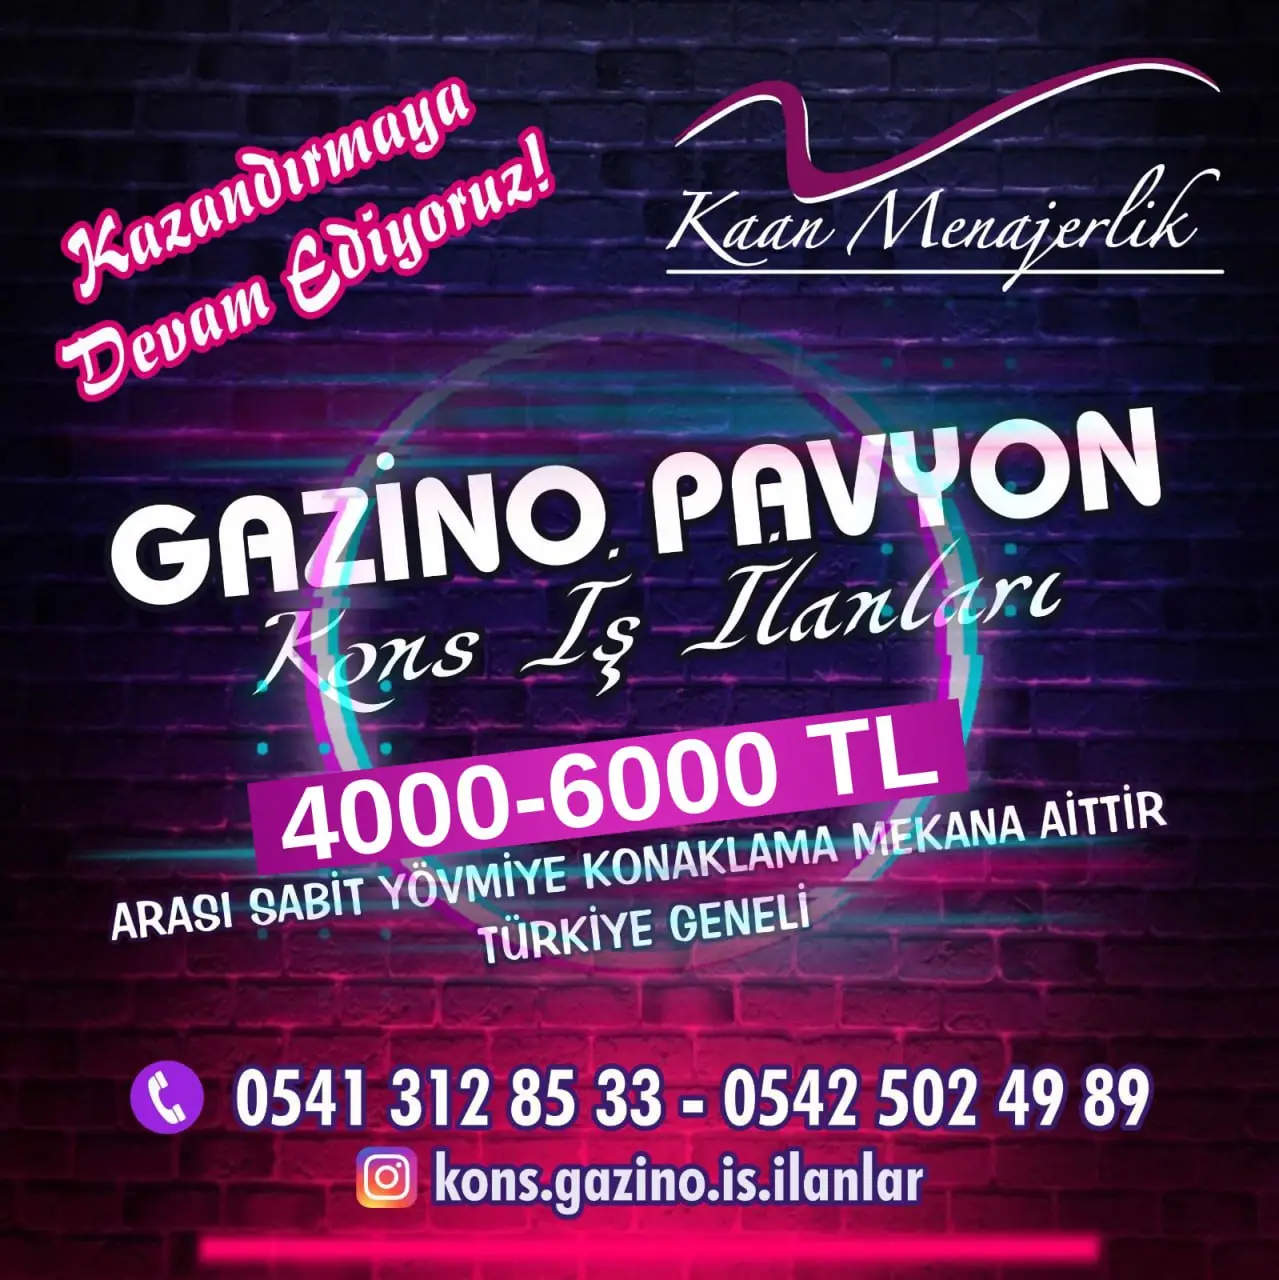 Trabzon Kons iş ilanları